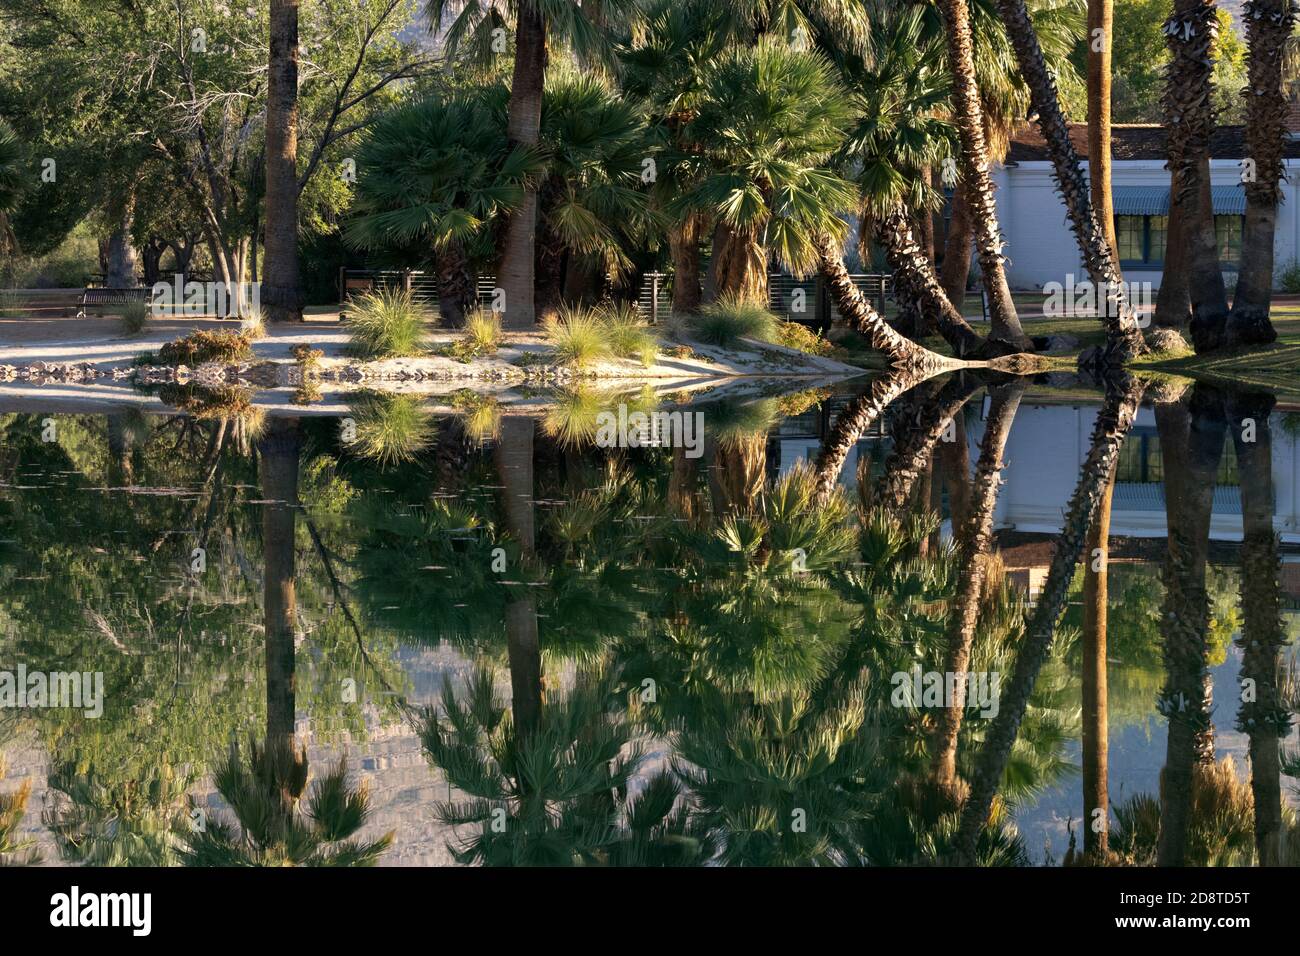 El Parque Regional agua caliente en el Condado de Pima, Arizona, es un oasis en el desierto de Sonora visto con reflexiones tempranas en la mañana en su estanque principal. Foto de stock